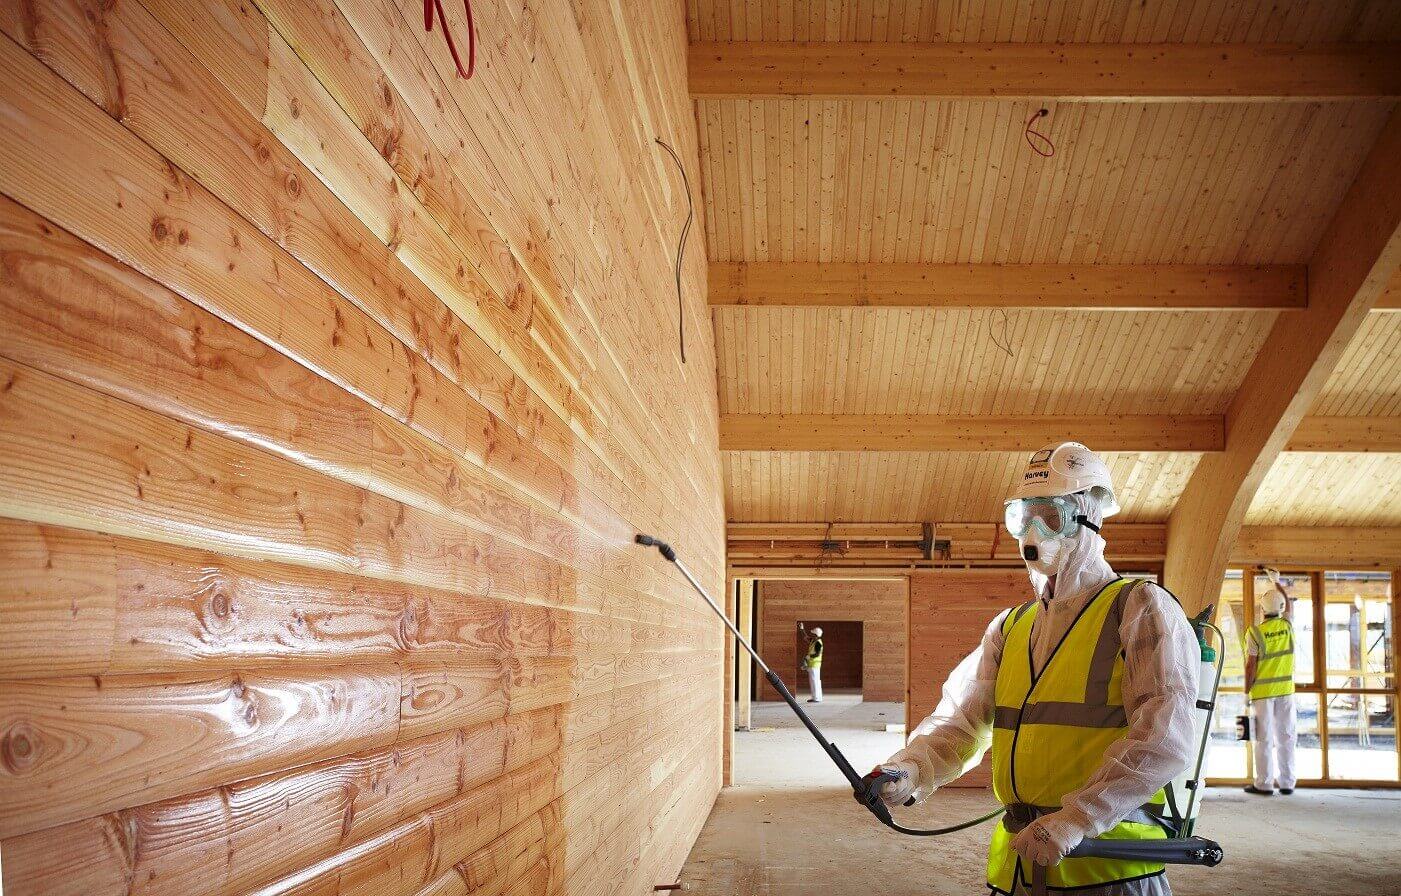 Герметизация межвенцовых швов в сочетании с огнебиозащитной пропиткой древесины обеспечивает существенное повышение огнестойкости здания